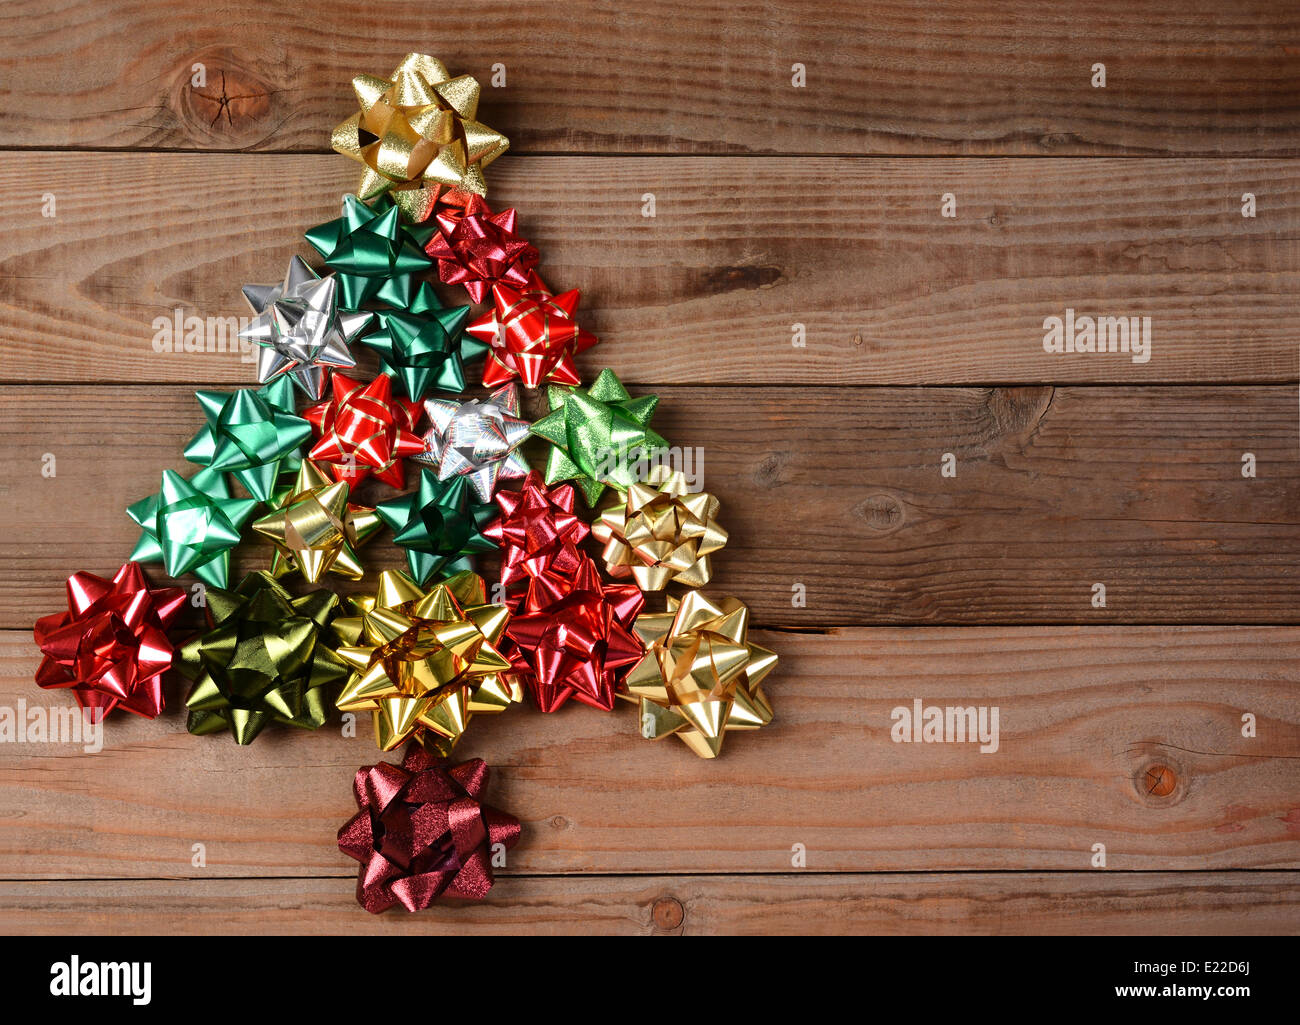 Vue aérienne d'un groupe d'arcs assortis disposés en forme d'arbre de Noël. Banque D'Images